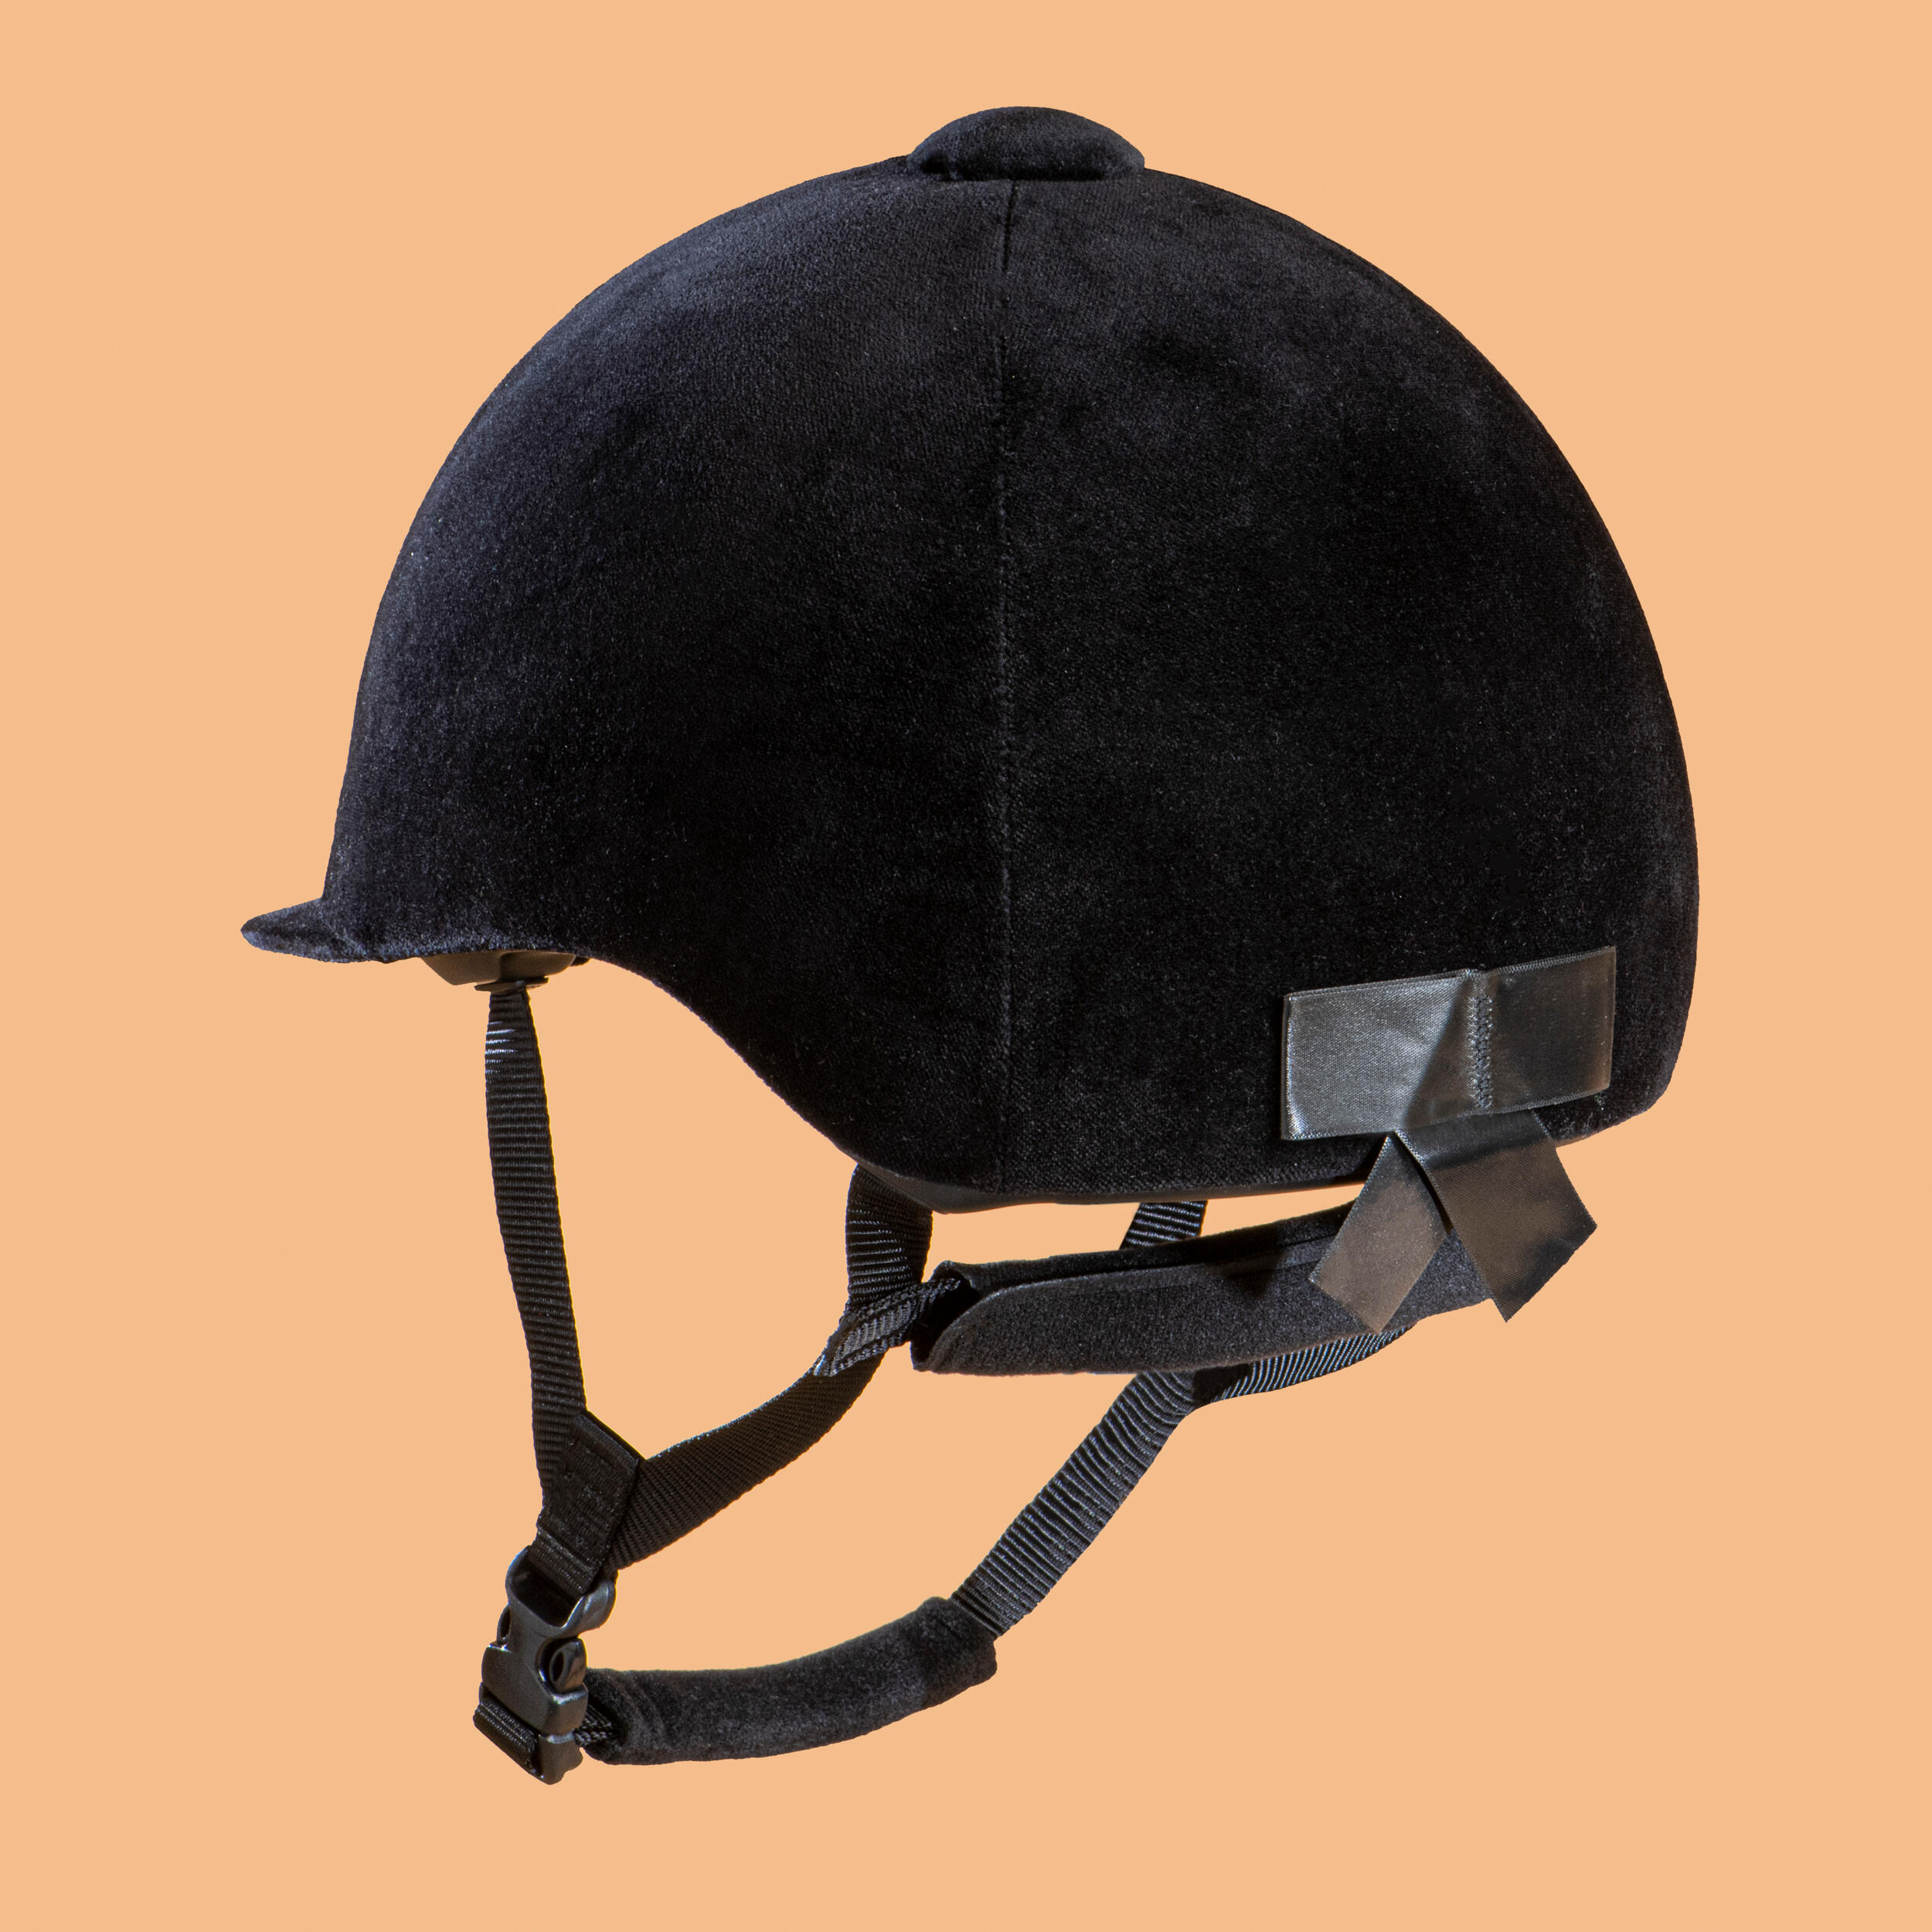 Adult/Kids' Horse Riding Helmet 140 - Black Velvet 2/4